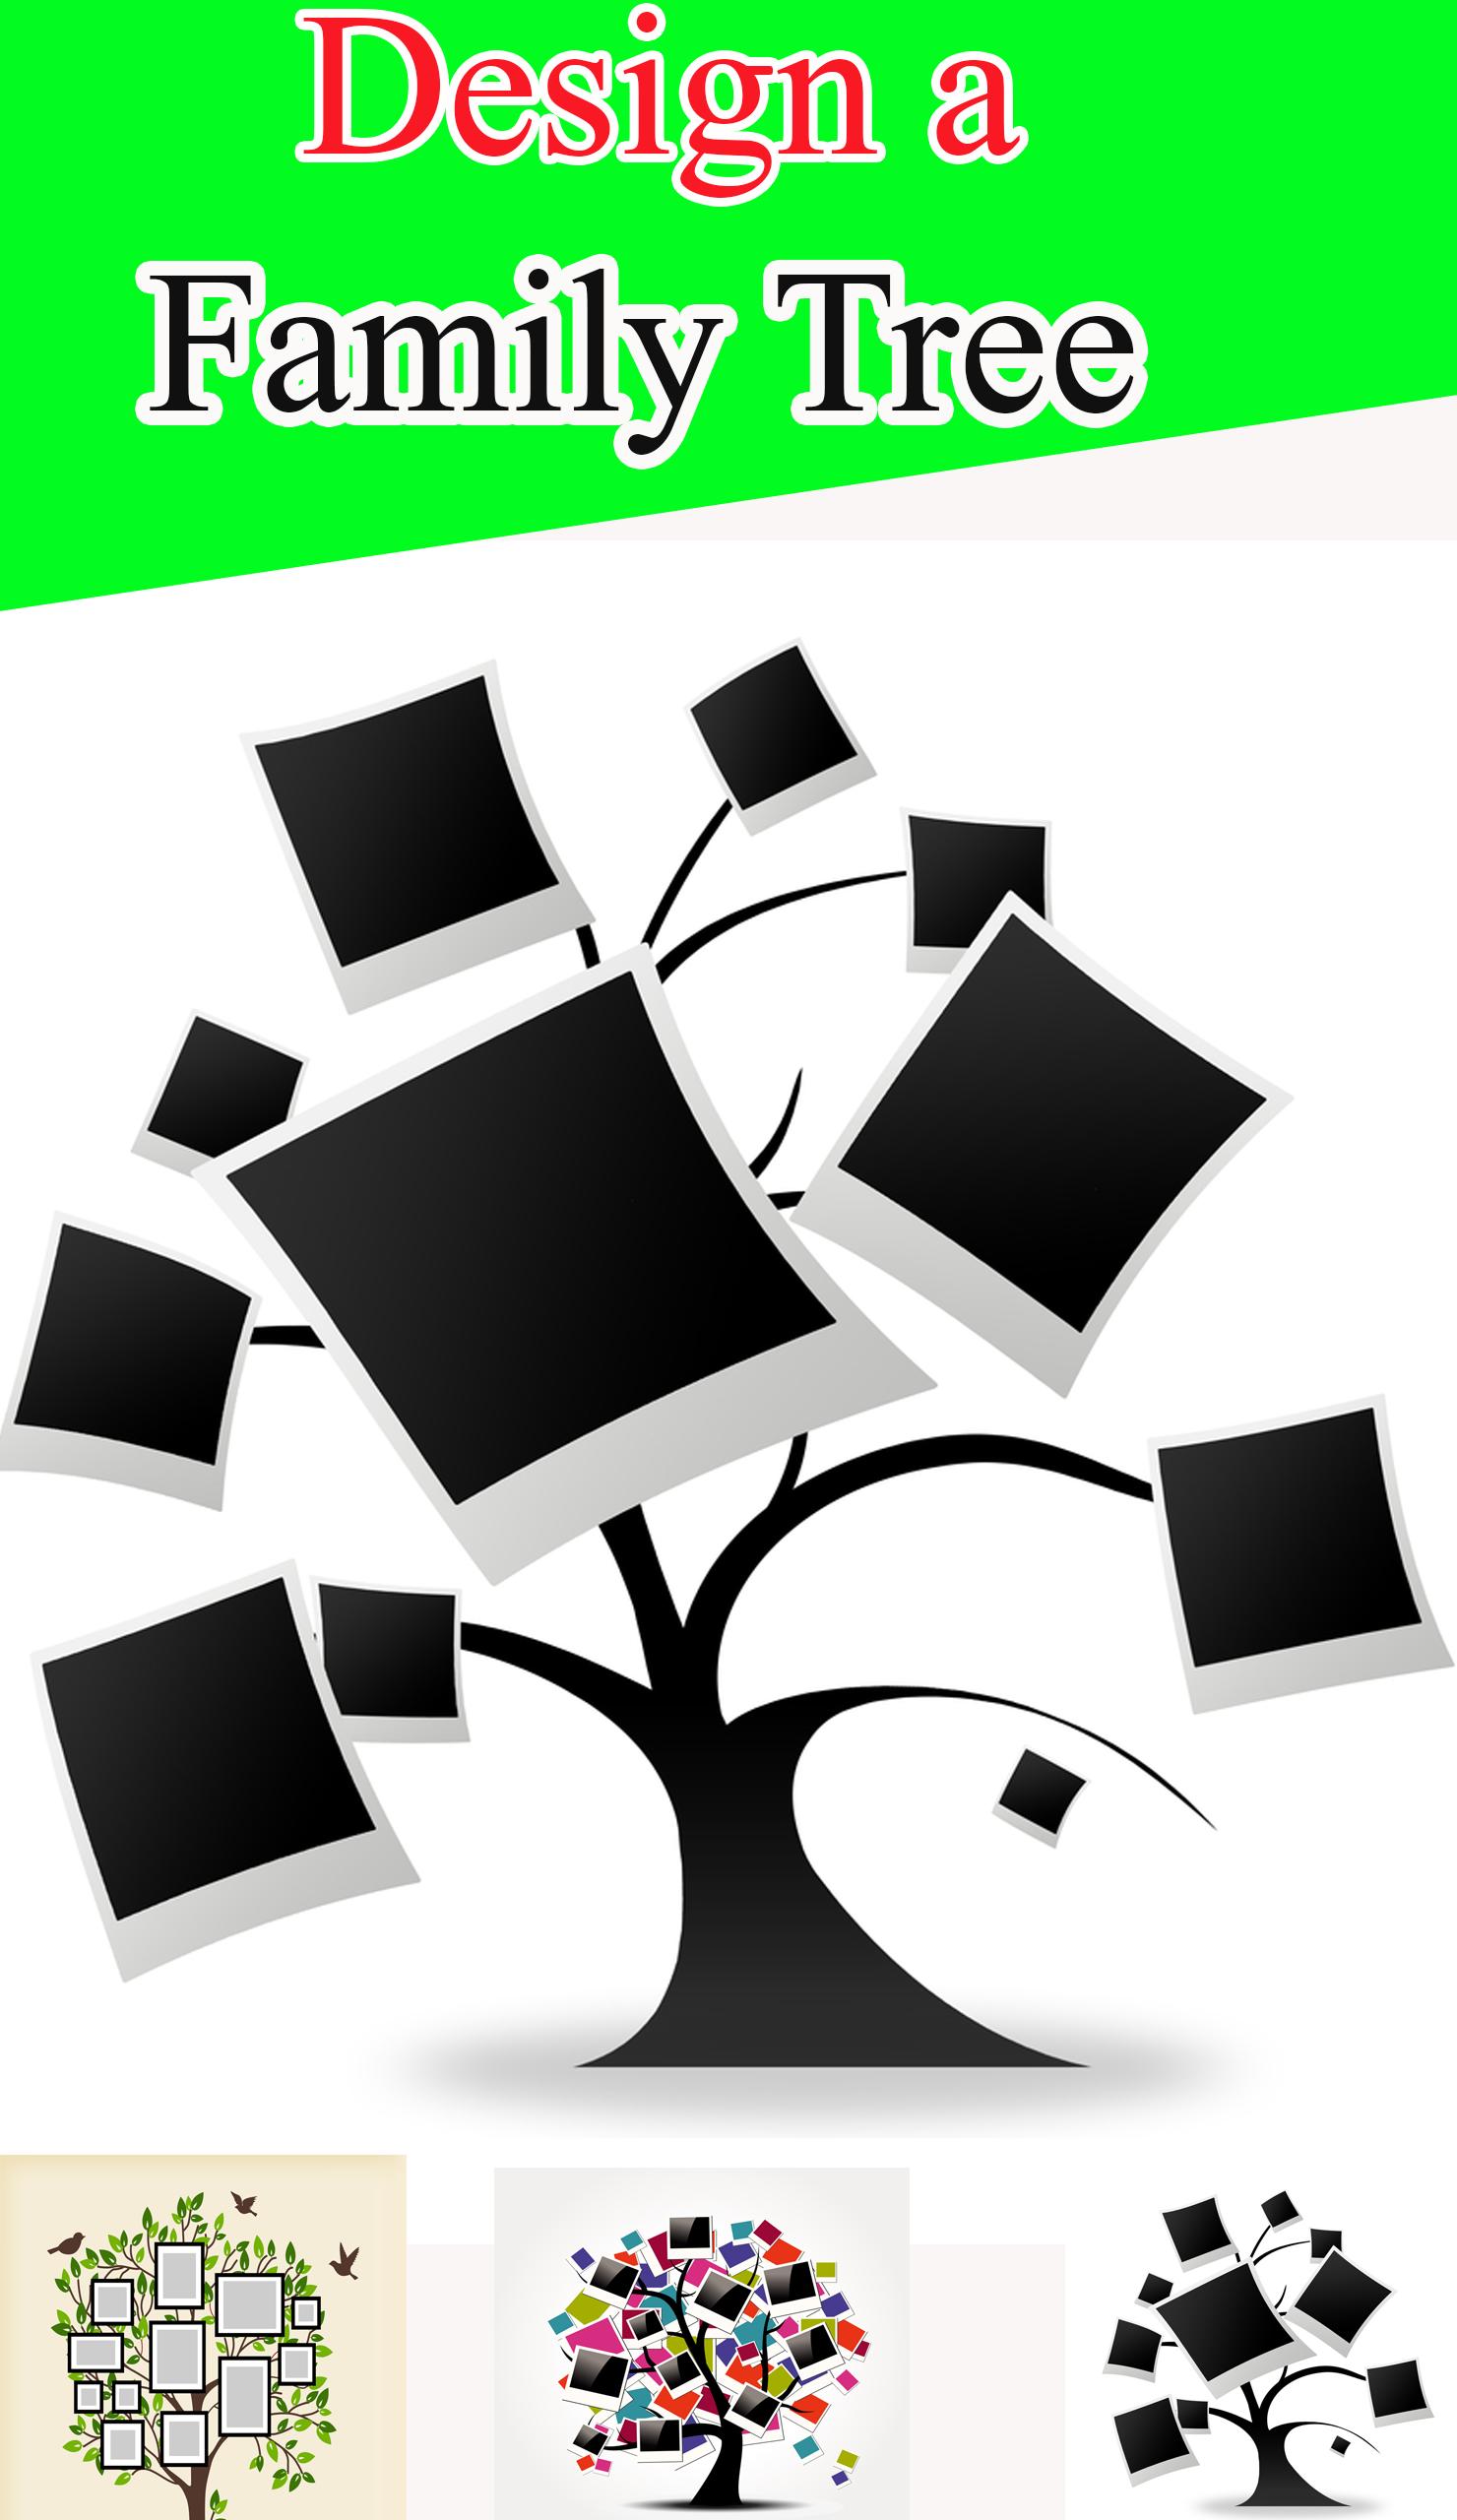 شجرة العائلة تصميم شجرة العائلة مع الصور For Android Apk Download